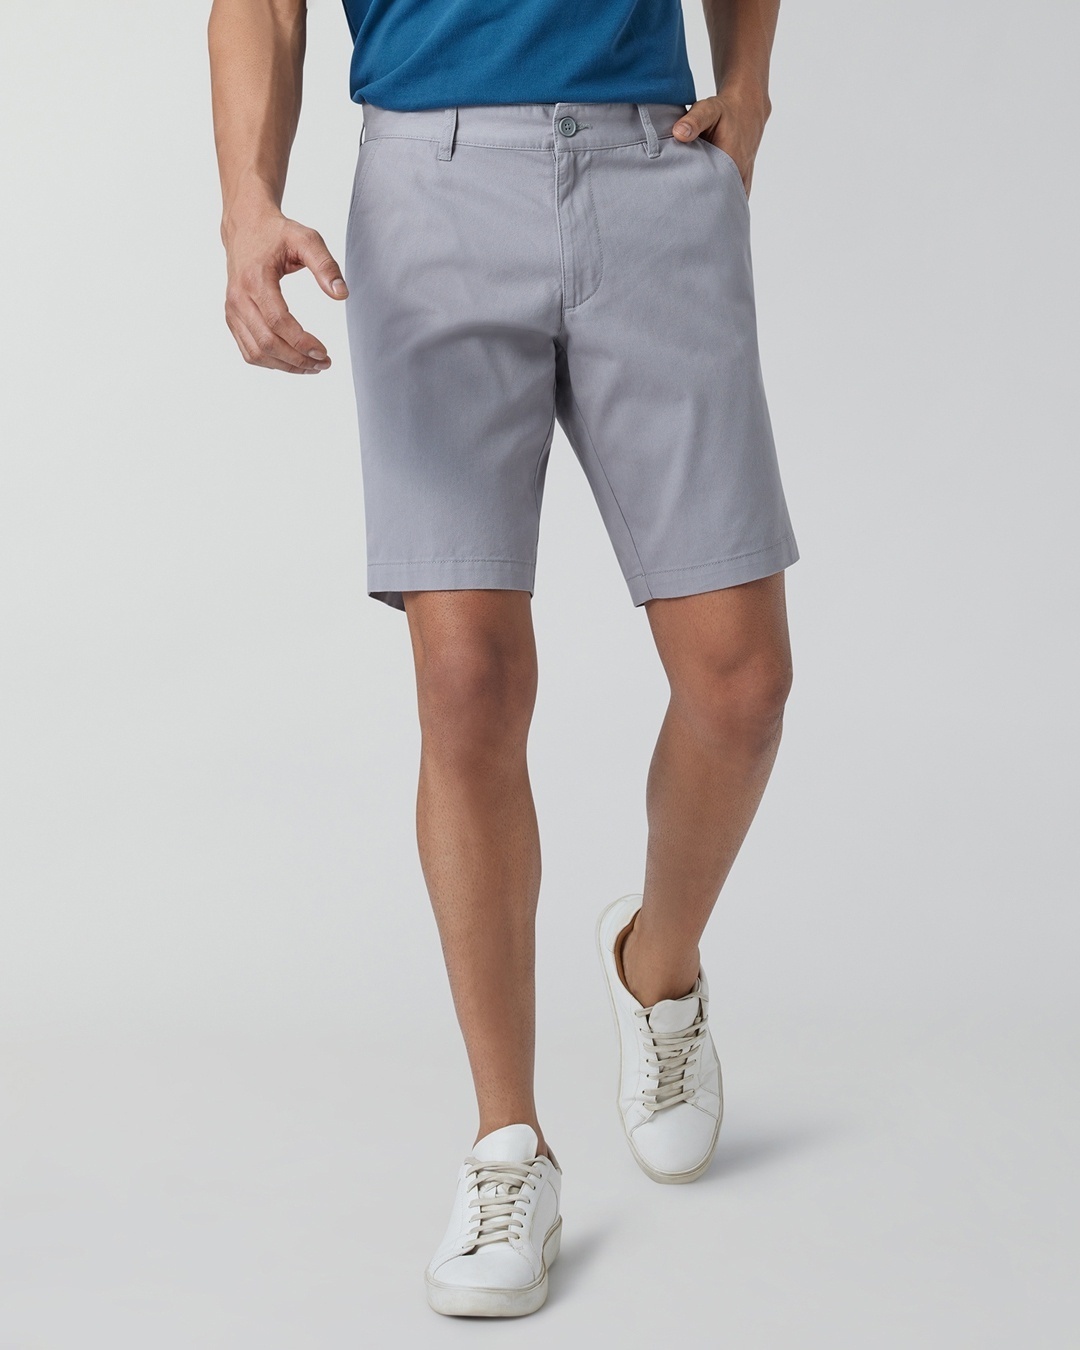 men wearing grey shorts